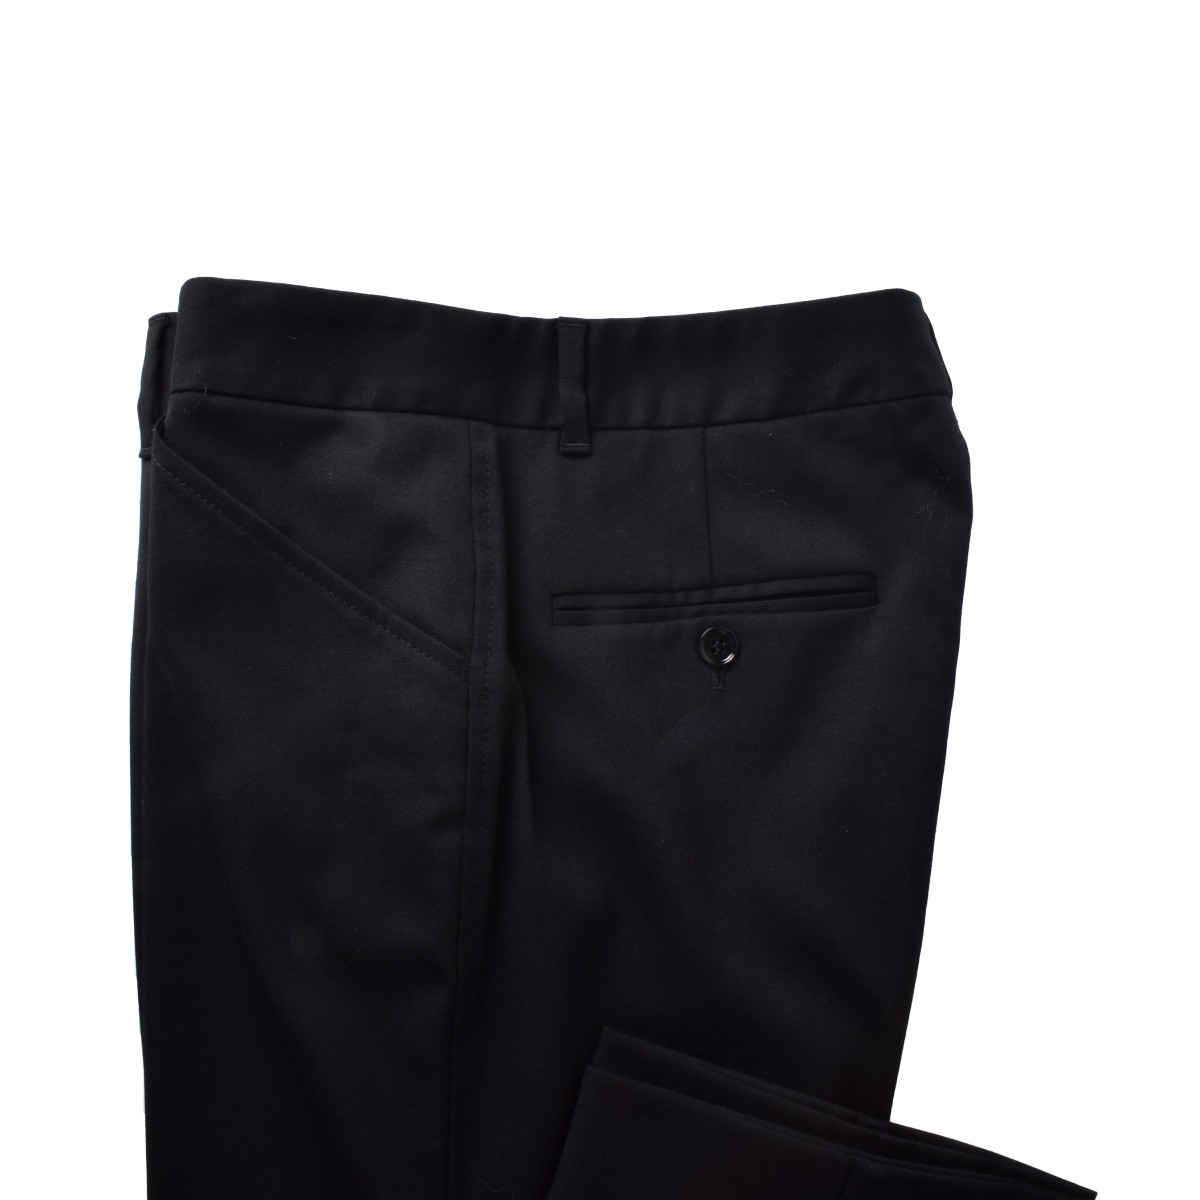 Two Dolce & Gabbana Black Pants